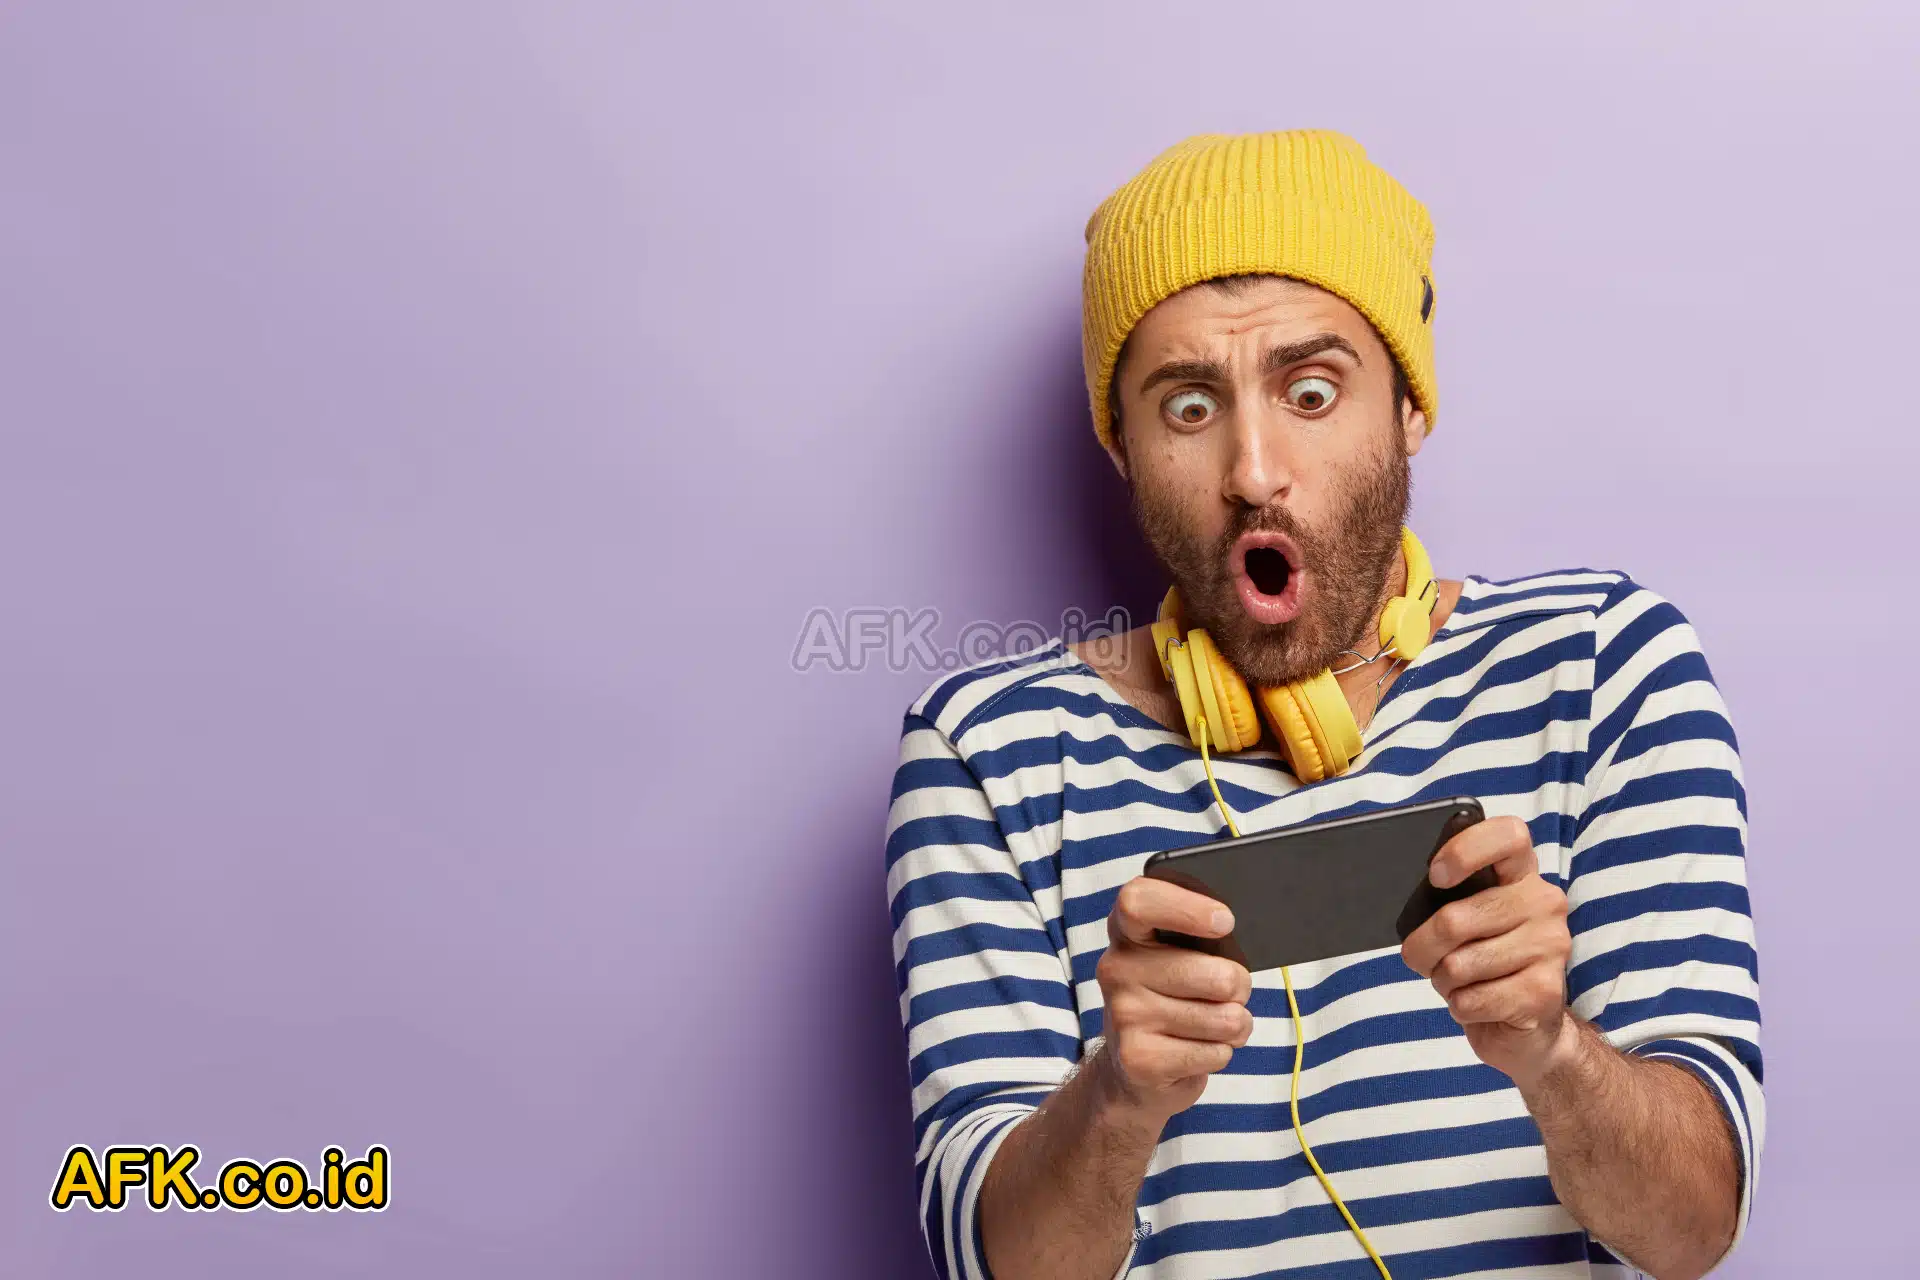 Laki-laki berjenggot tipis memegang handphone dengan ekspresi terkejut memakai topi kuning dan headset kuning